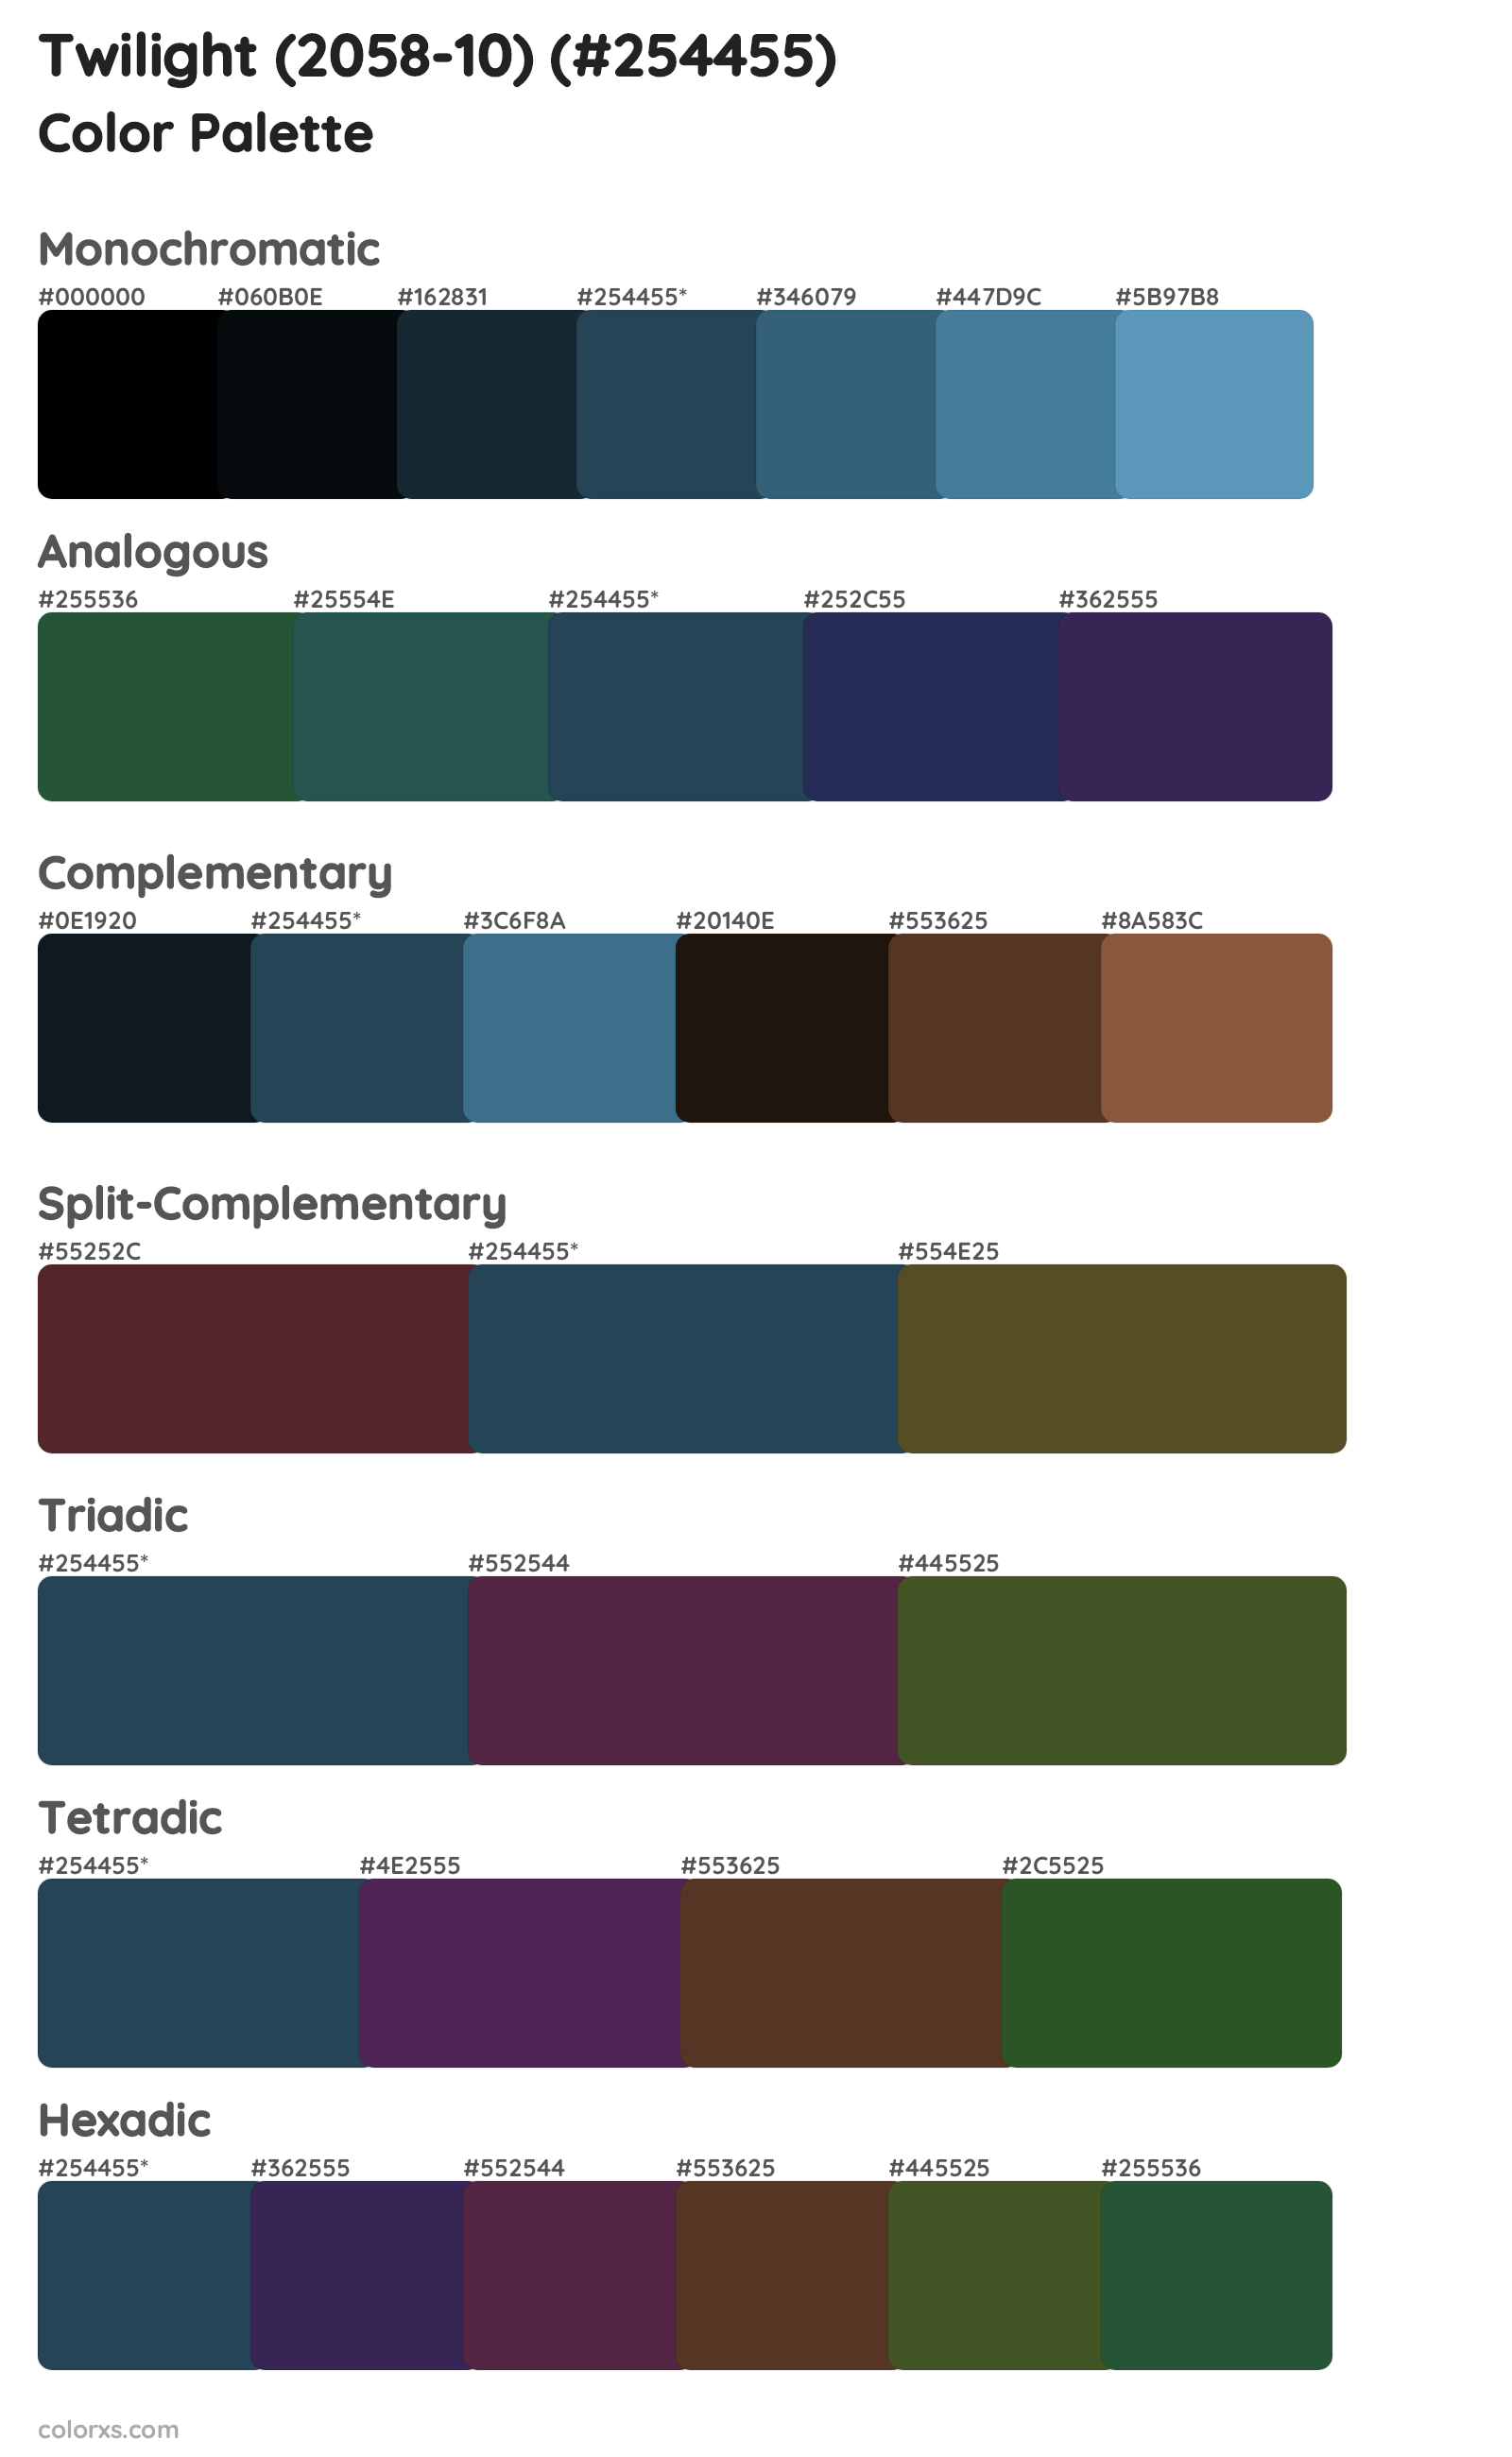 Twilight (2058-10) Color Scheme Palettes